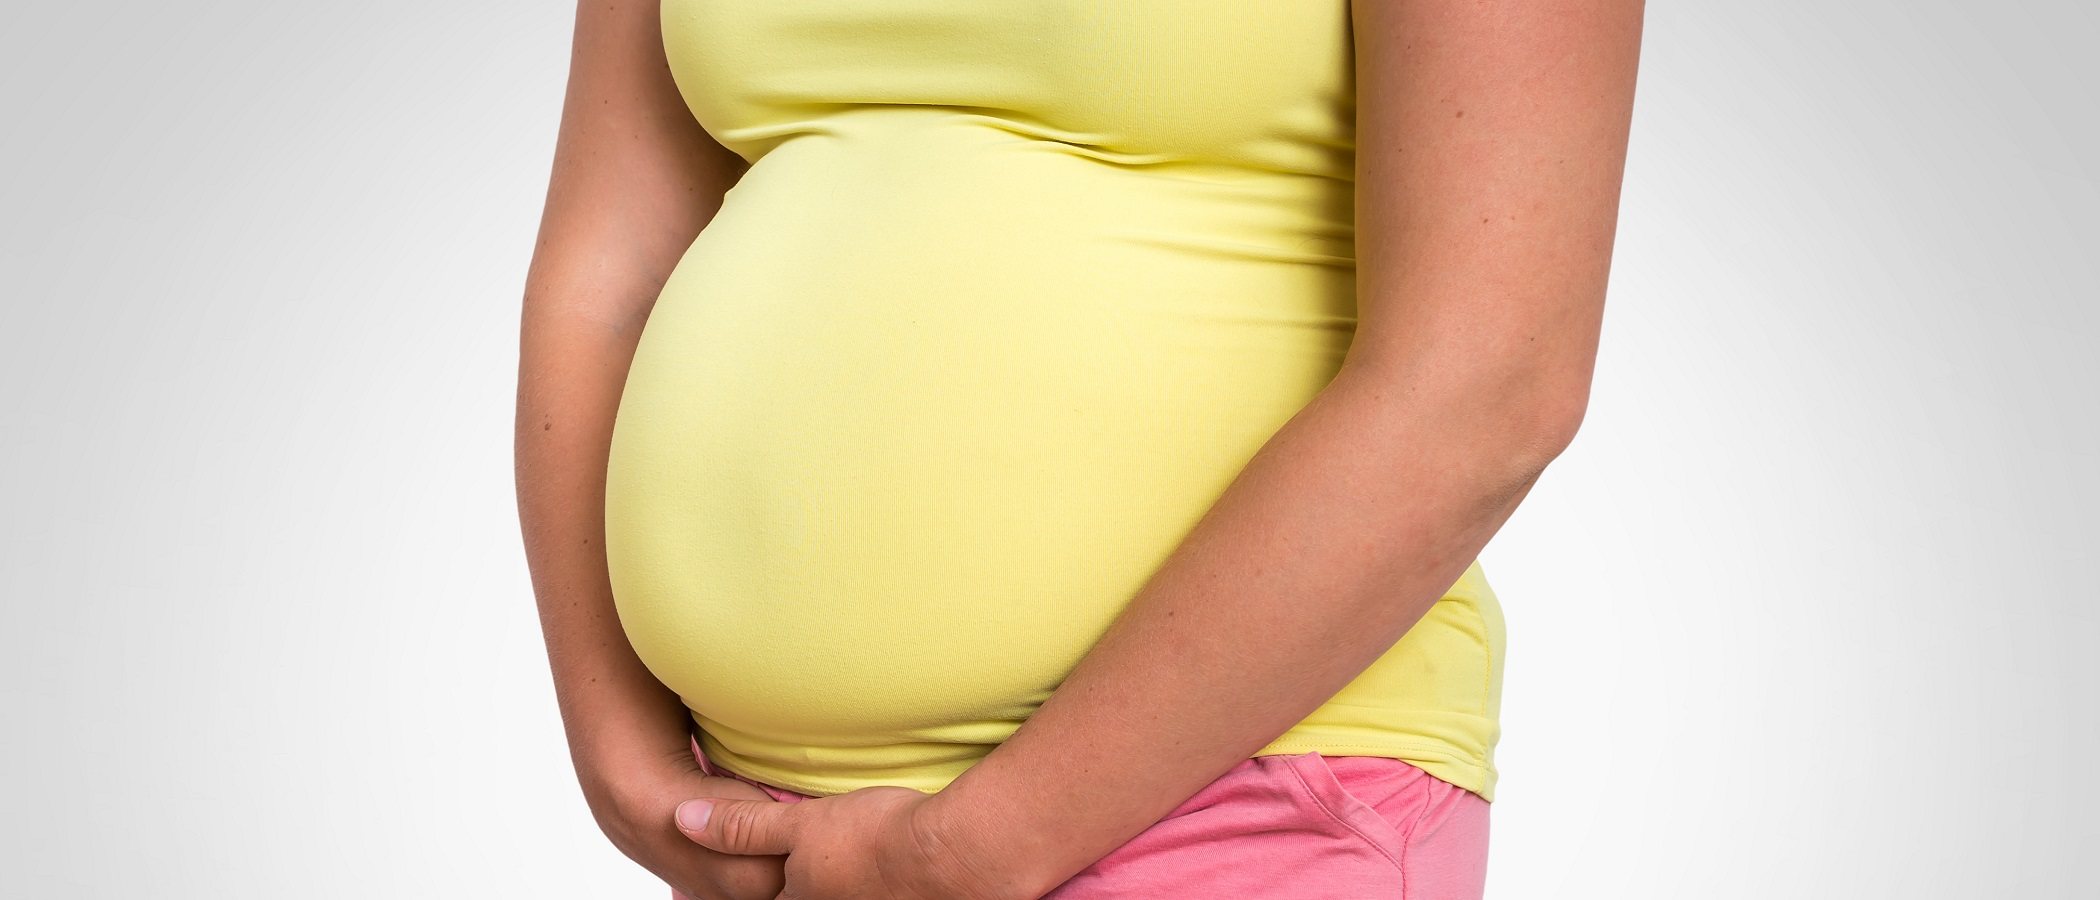 Escapes de orina durante el embarazo